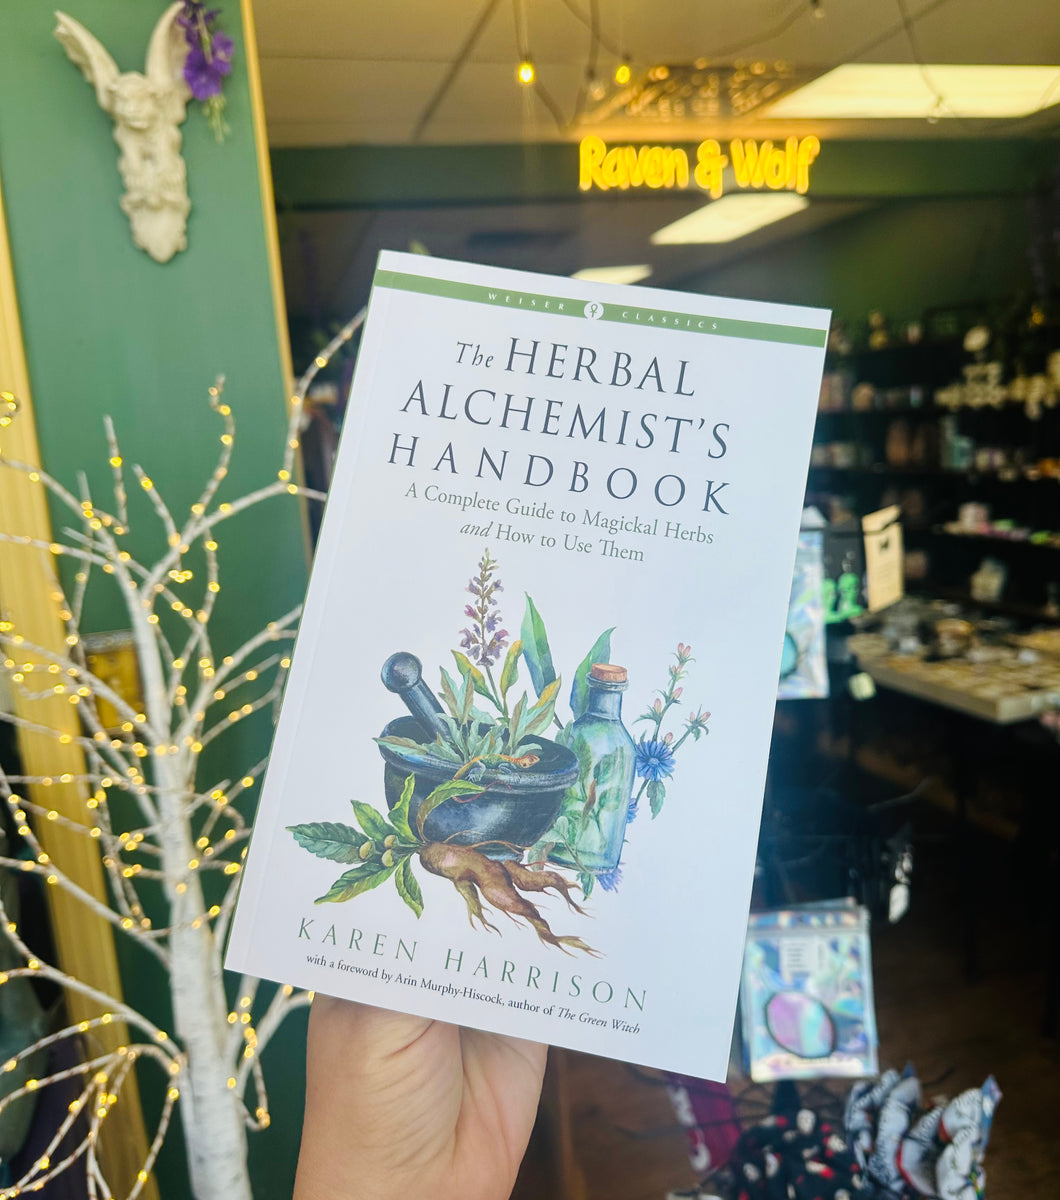 Herbal alchemist’s handbook